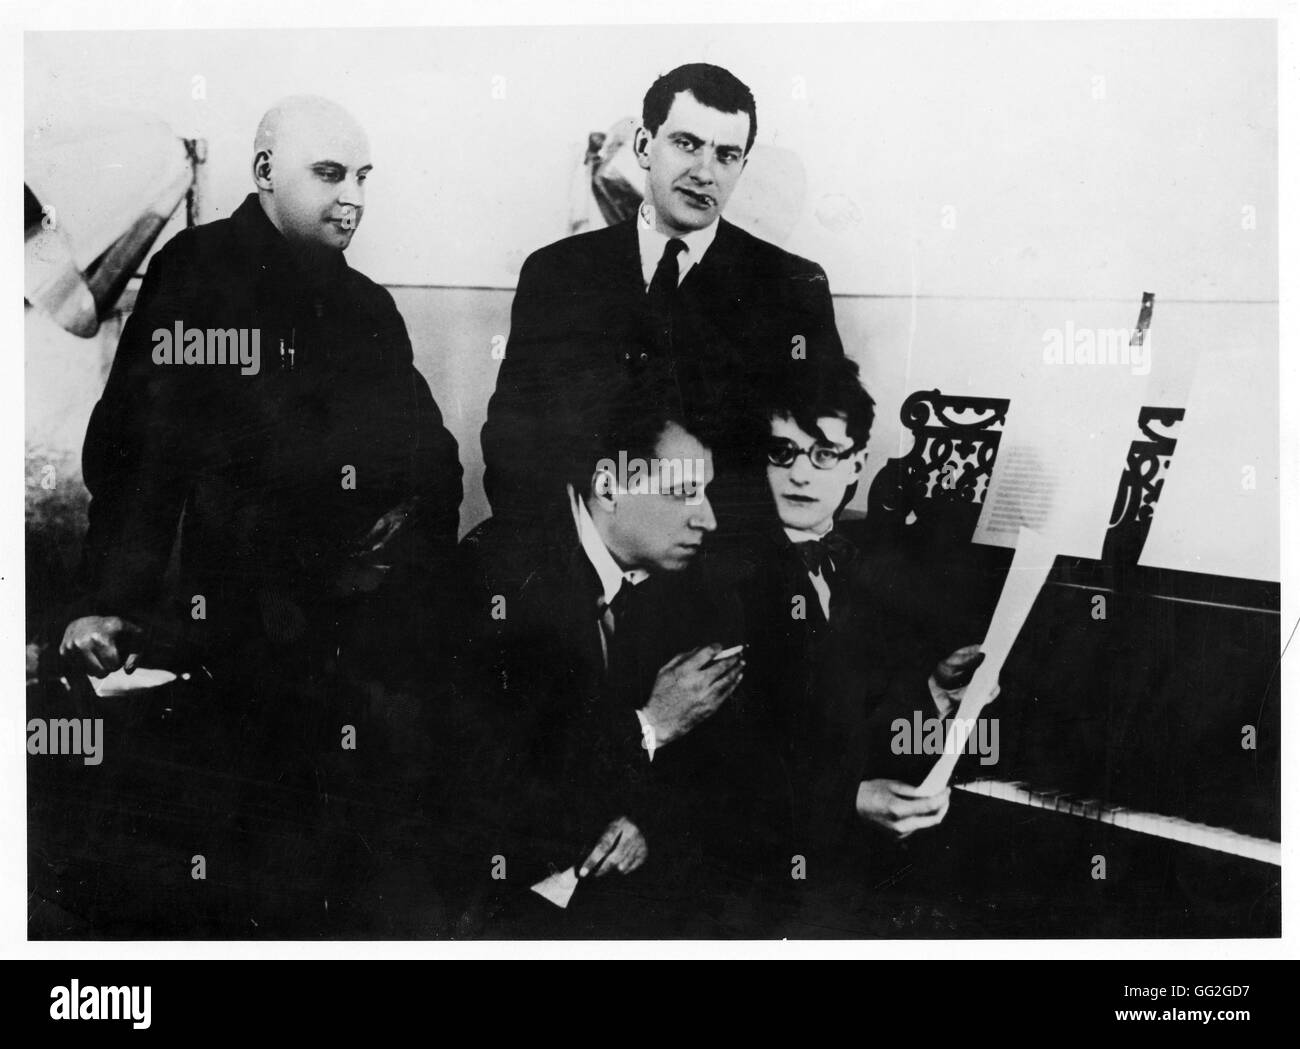 En un ensayo de "Bedbug' en 1929. Sentado, Dimitri Shostakovich y Meyerhold. De pie, Vladimir Mayakovsky y Rodchenko. Fotografía. Foto de stock